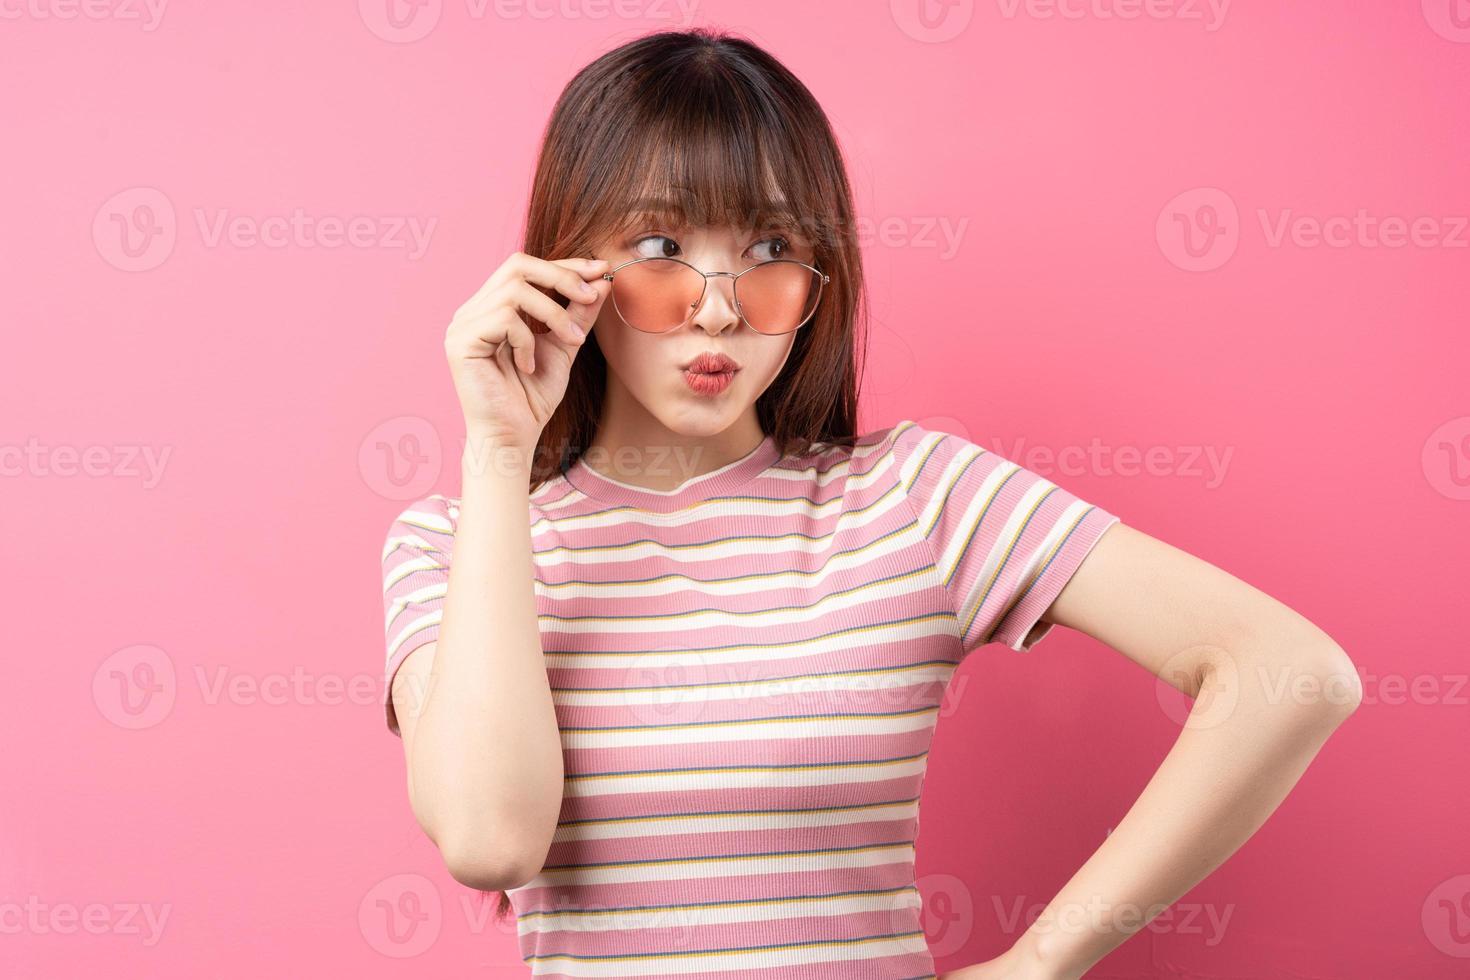 afbeelding van een jong Aziatisch meisje met een roze t-shirt op een roze achtergrond foto